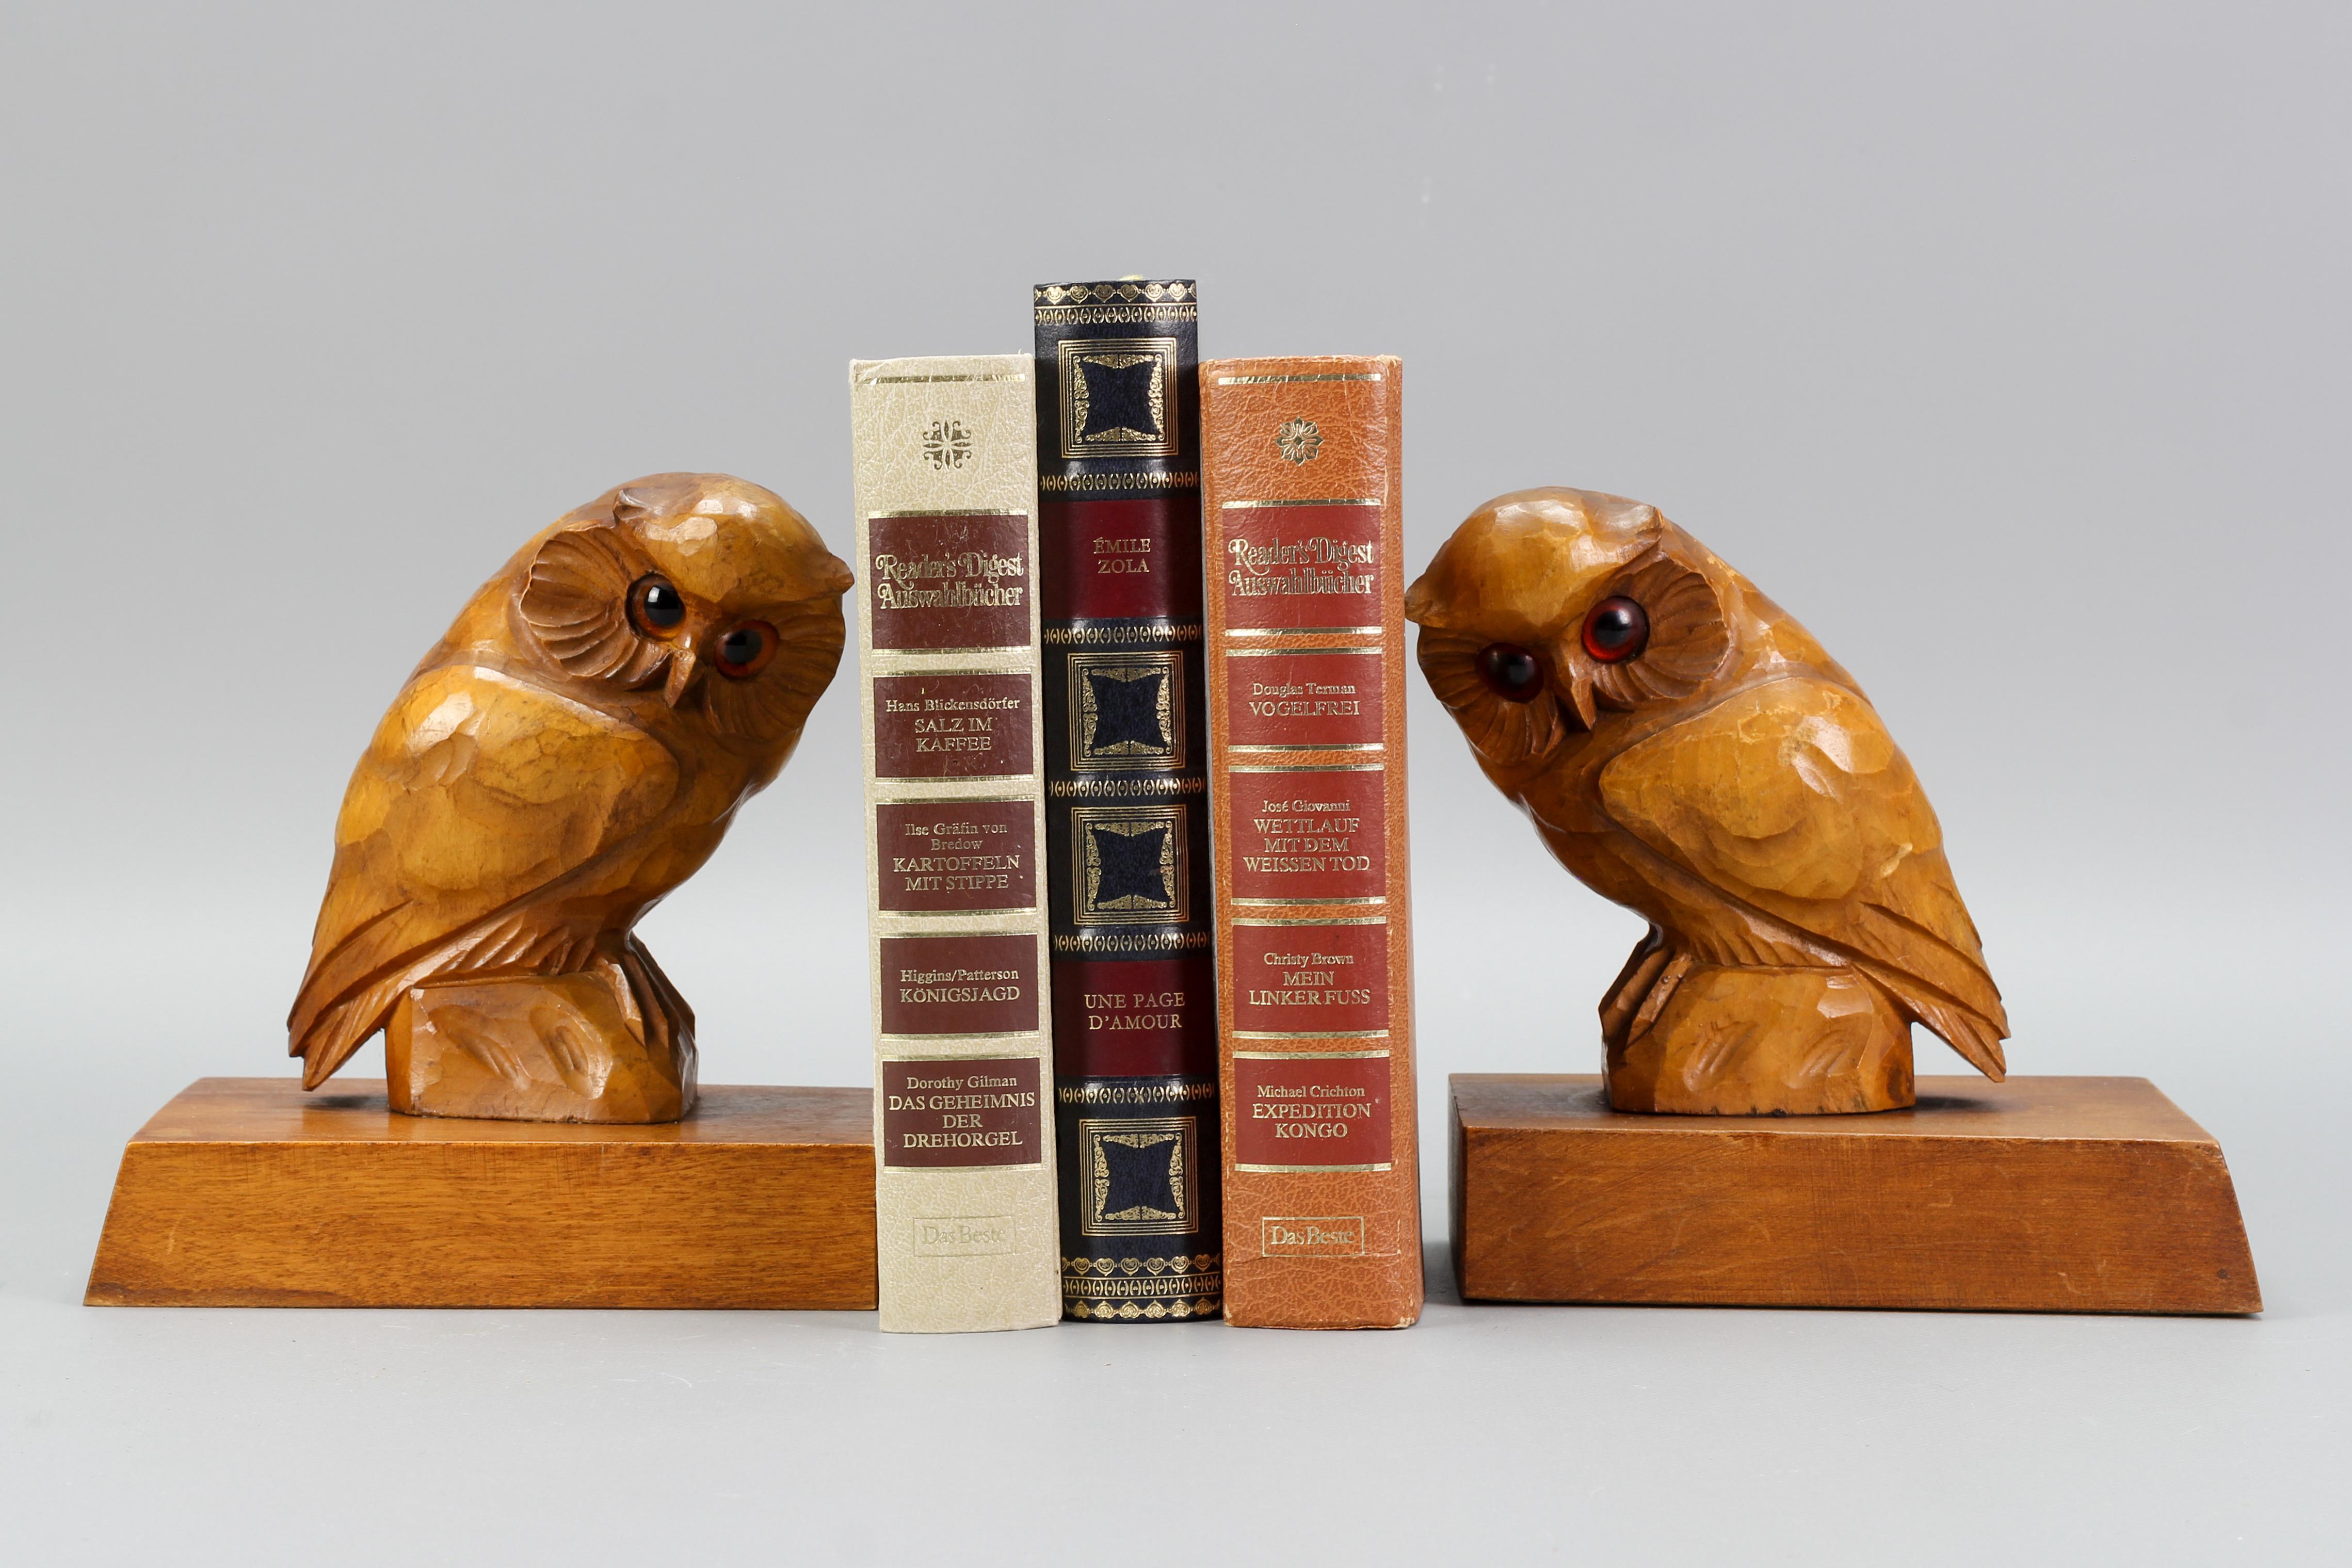 Charmante paire de serre-livres en bois de tilleul avec des figurines sculptées de hiboux aux beaux yeux orange, Allemagne, vers les années 1930.
Ces adorables serre-livres feront merveille sur une étagère, un manteau de cheminée ou une table